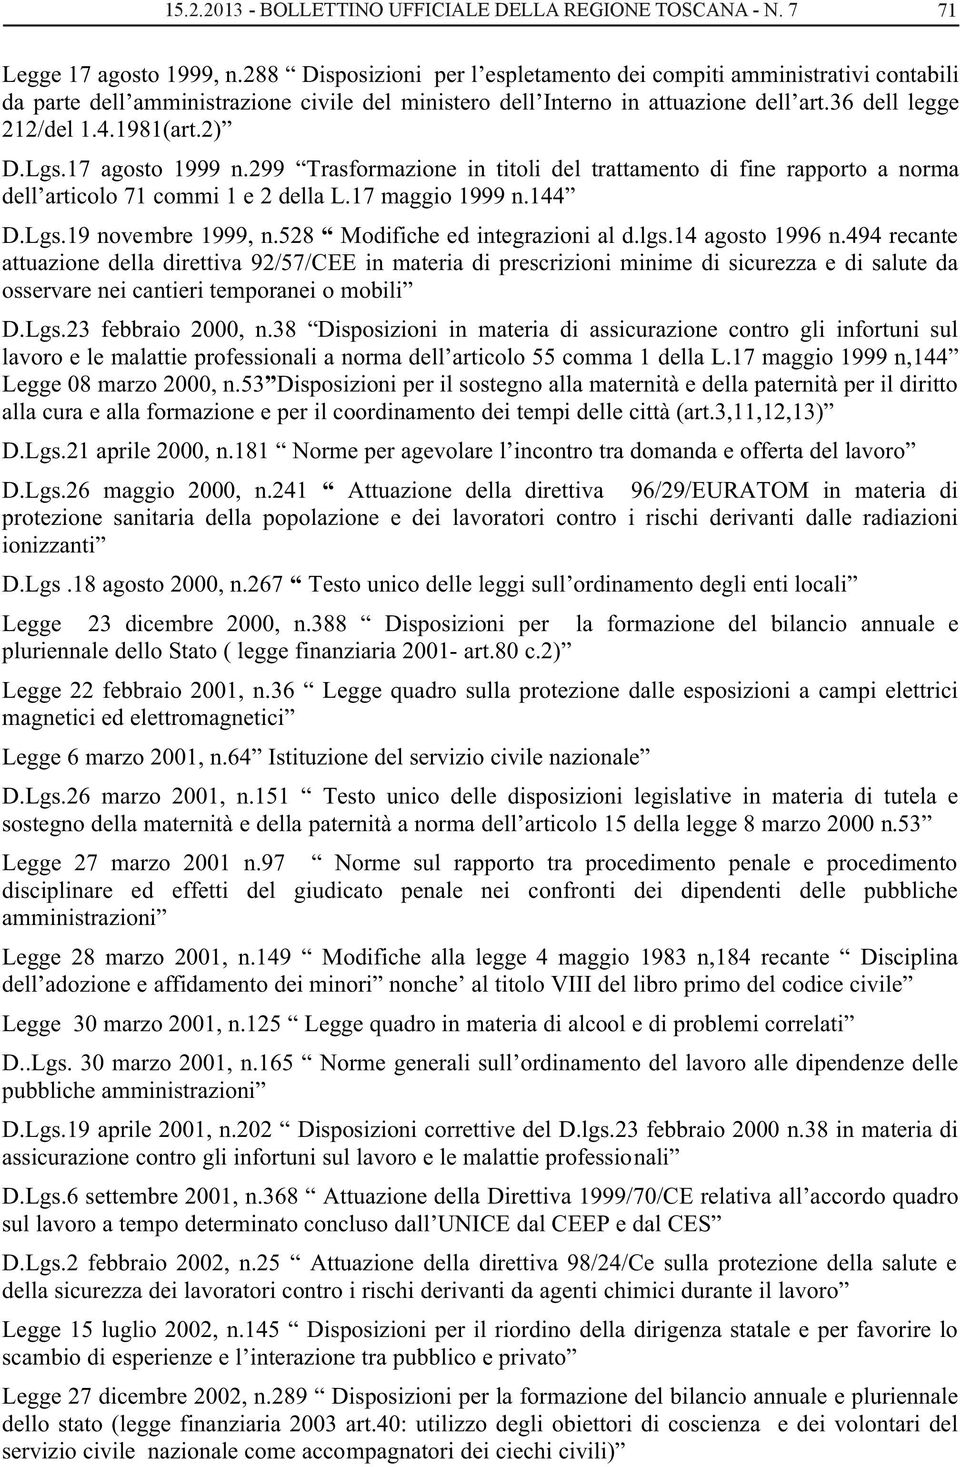 Lgs.17 agosto 1999 n.299 Trasformazione in titoli del trattamento di fine rapporto a norma dell articolo 71 commi 1 e 2 della L.17 maggio 1999 n.144 D.Lgs.19 novembre 1999, n.